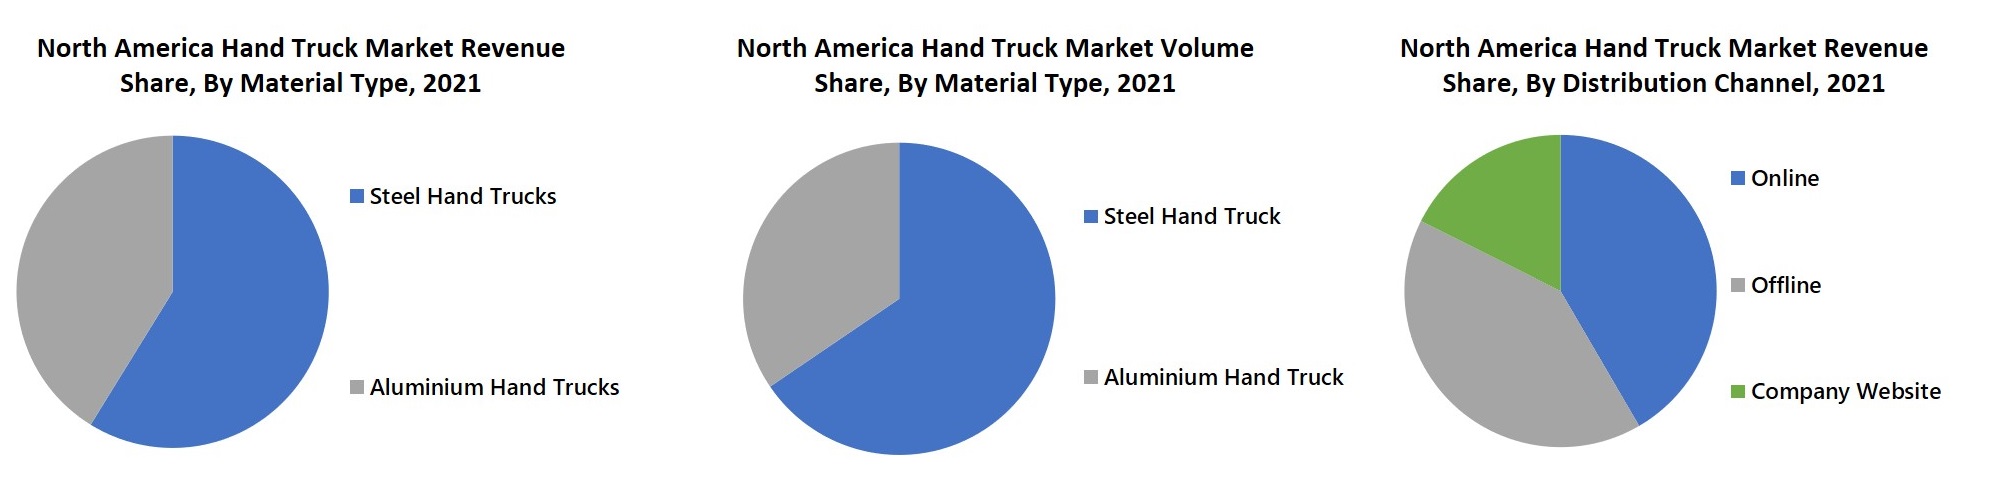 North America Hand Truck Market Revenue Share